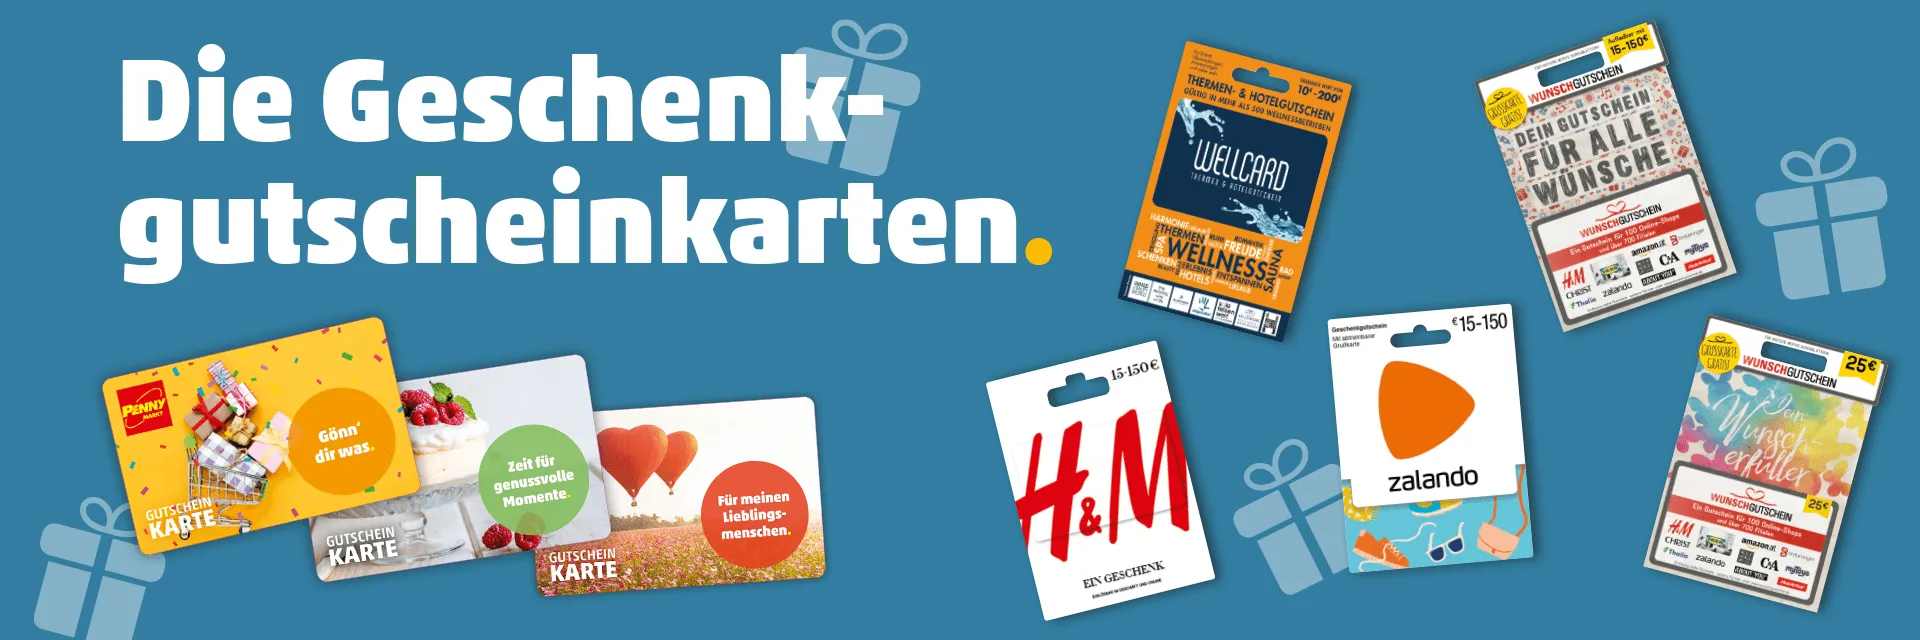 Gutscheine & Wertkarten zum Verschenken | Österreich Markt PENNY